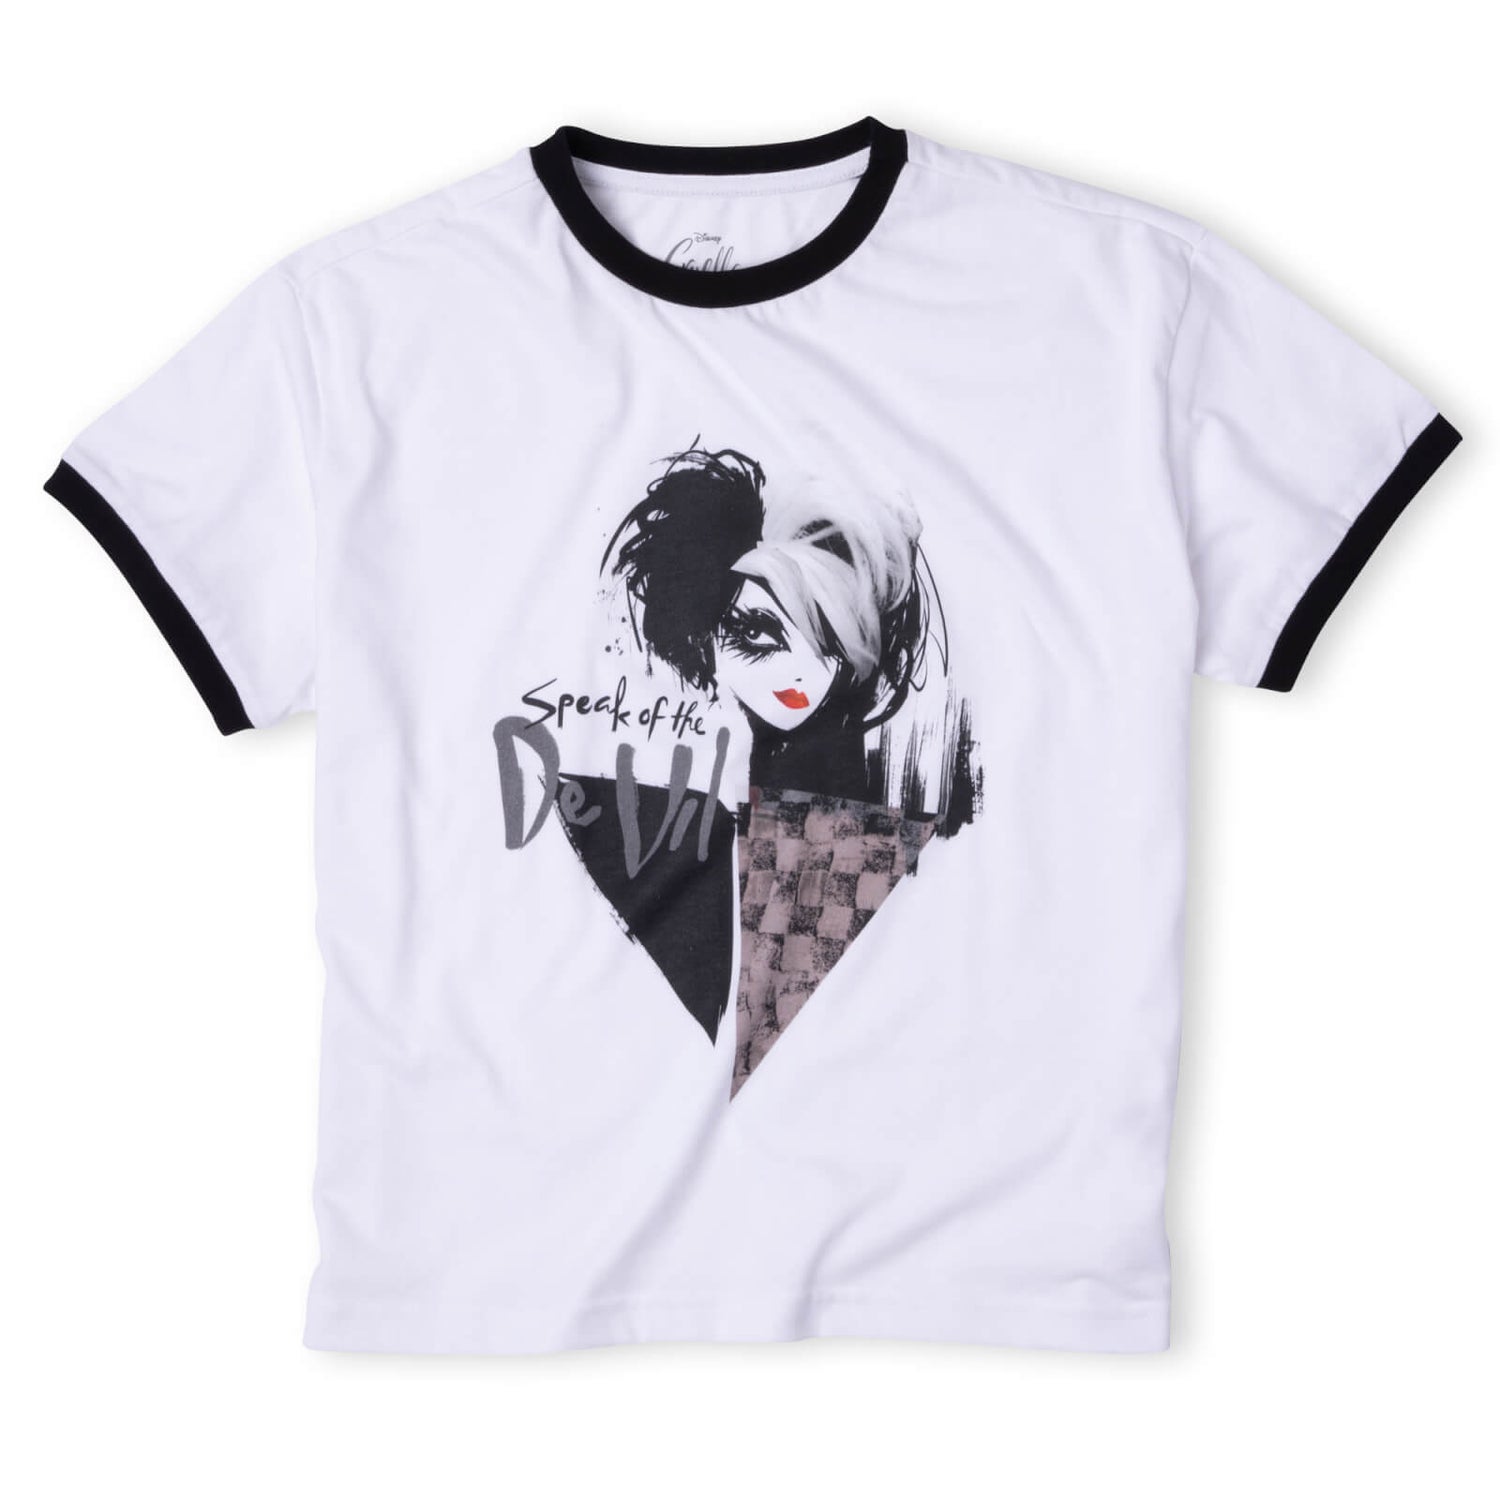 T-Shirt Cropped Ringer Femme - Noir/Blanc